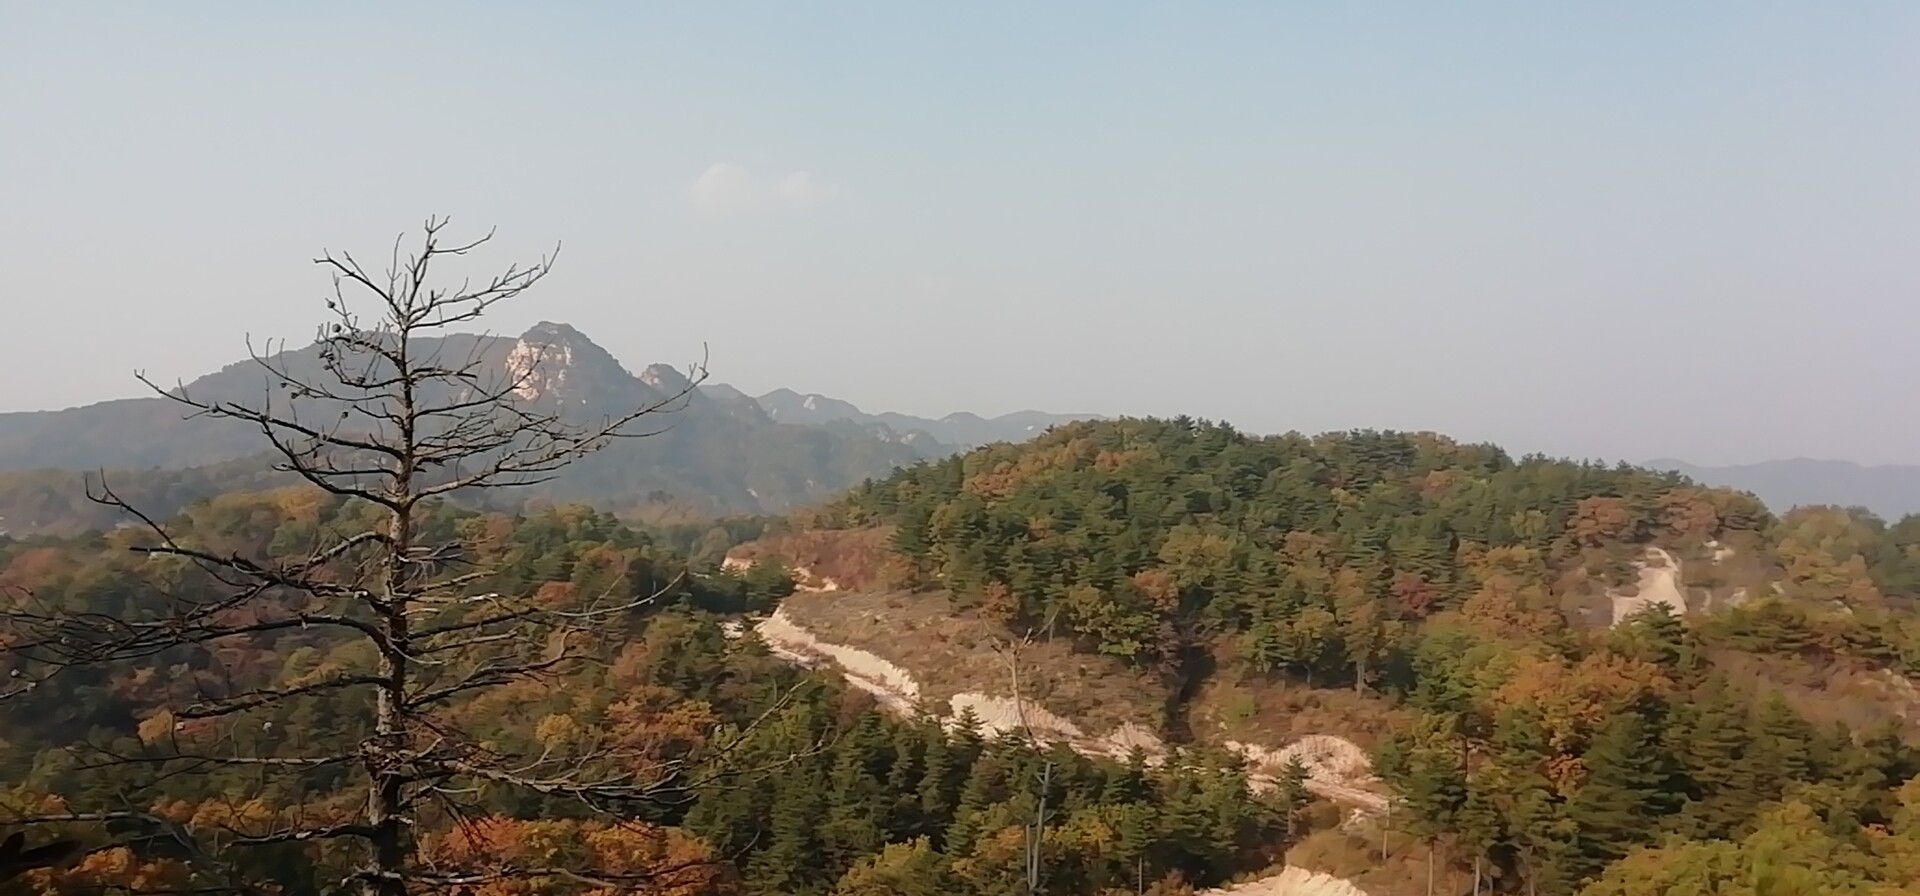 【携程攻略】北京九龙山景点,九龙山是国家级森林公园。 公园内植被茂密，树木参天。上山大多是石…